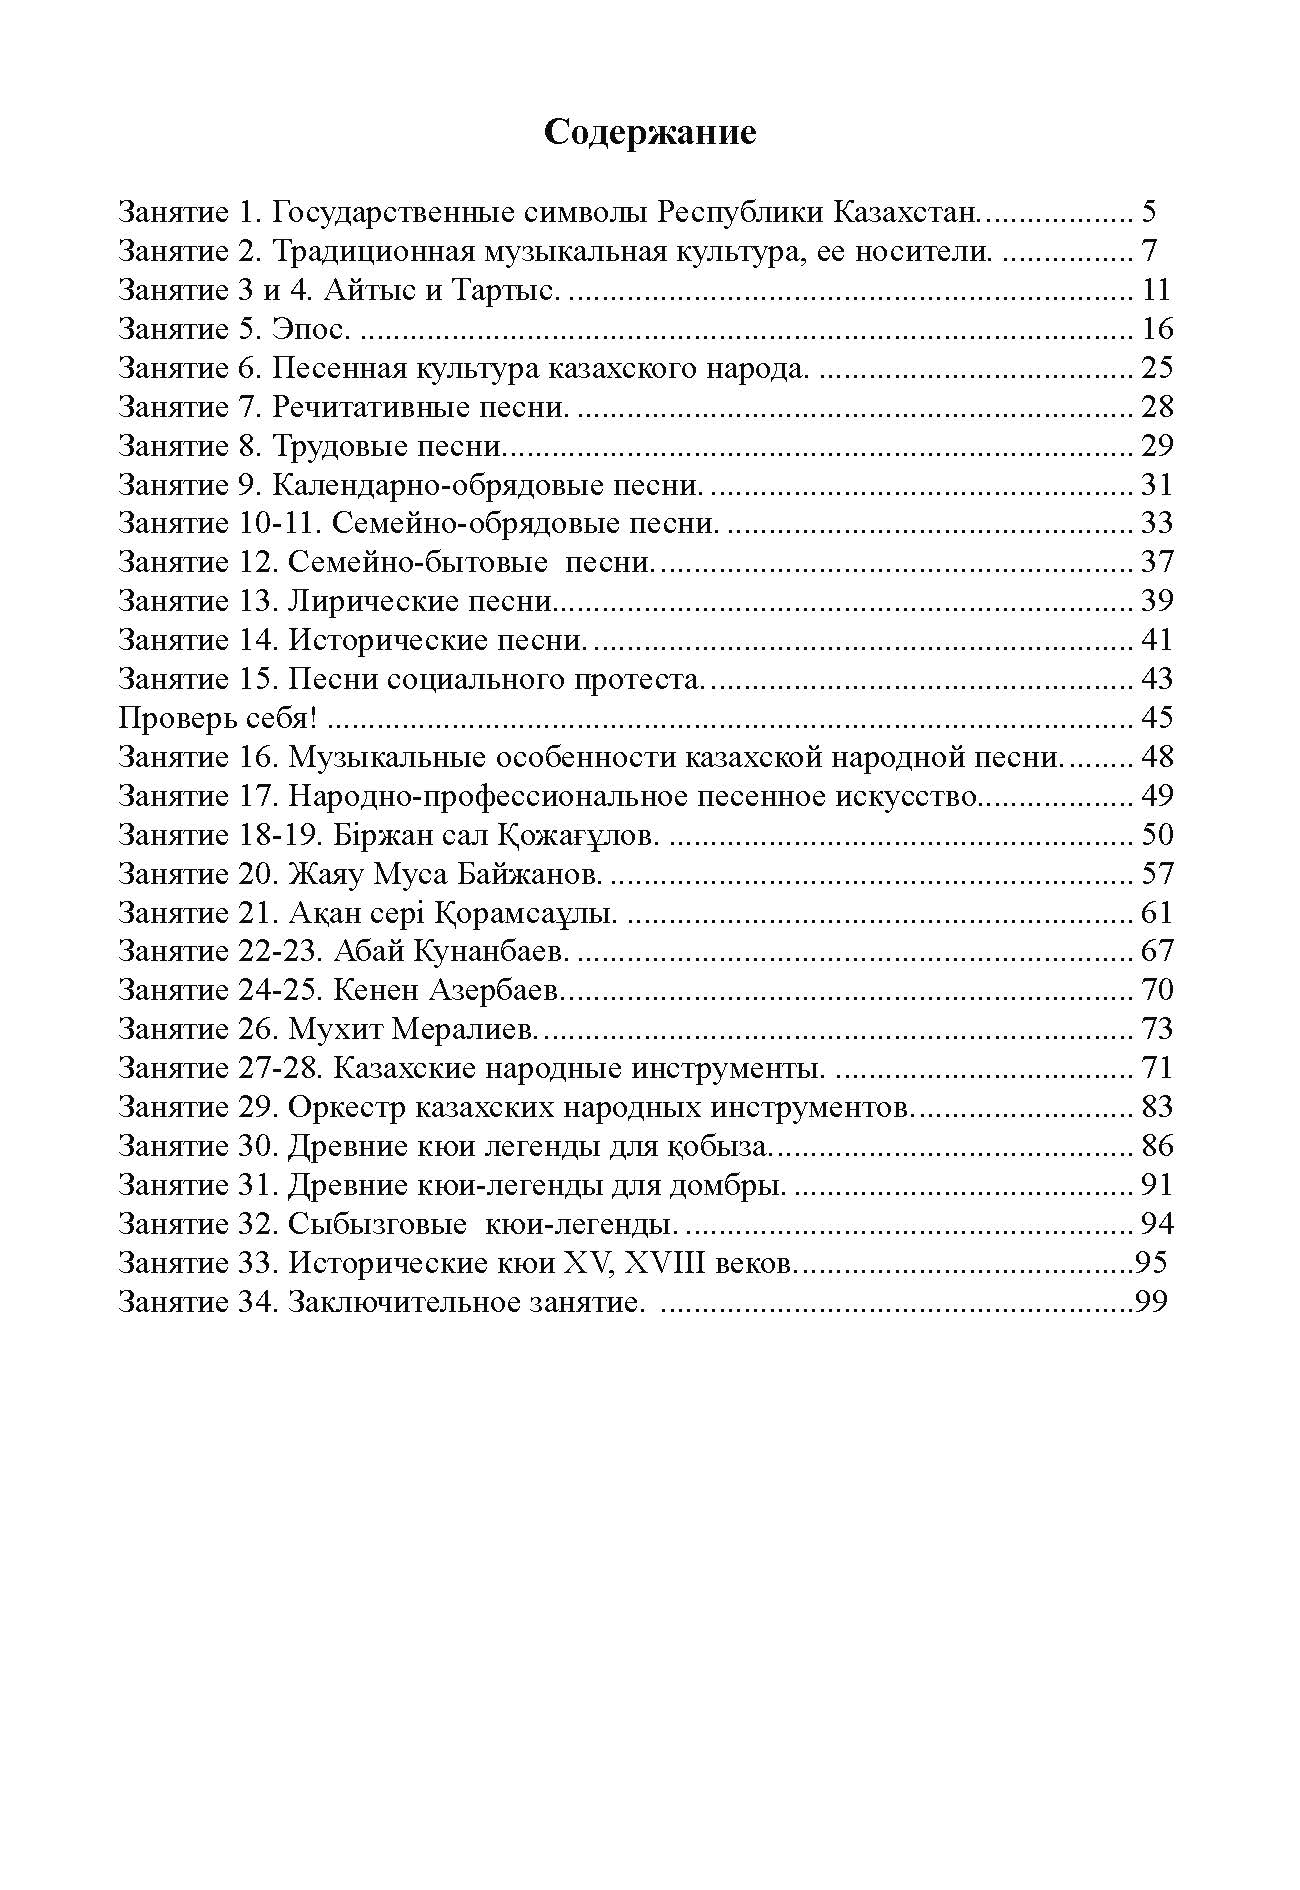 рабочая тетрадь по казахской музыкальной литературе для I года обучения